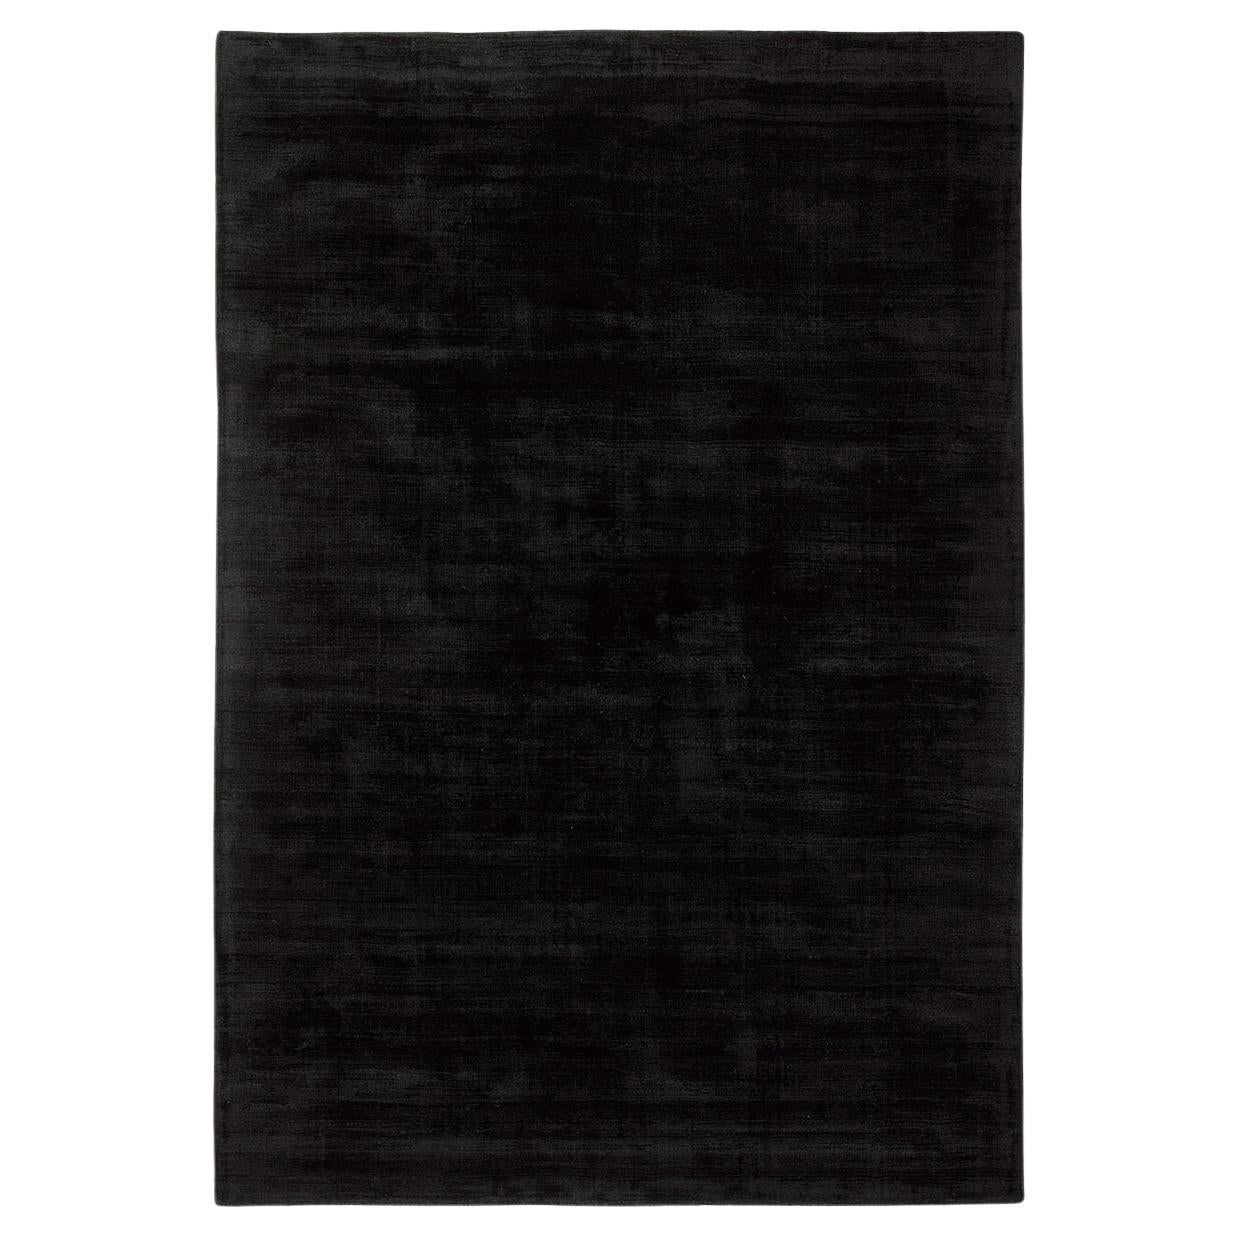 Trendiger glänzender schwarzer Teppich